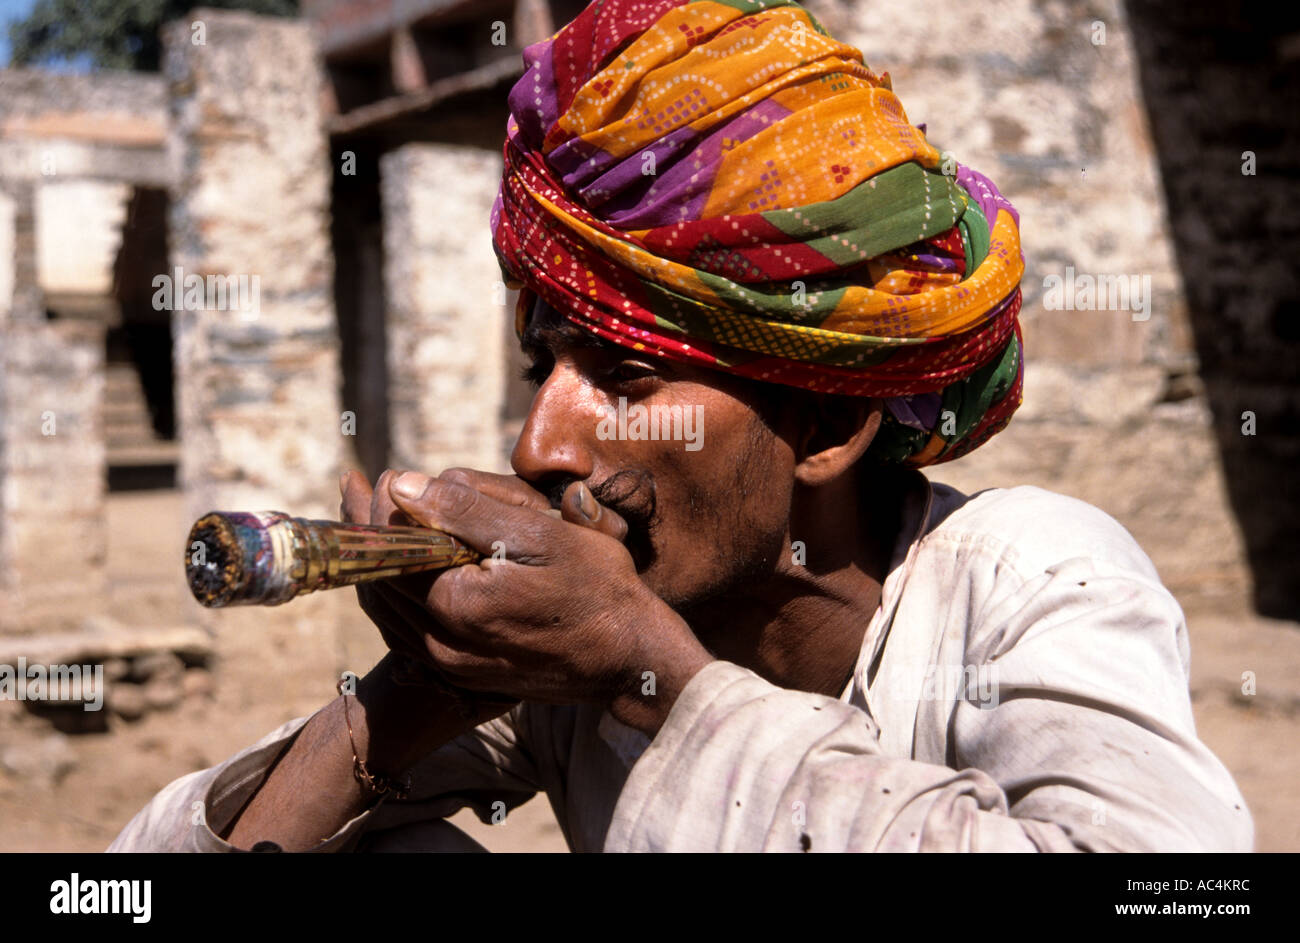 India Rajasthan hash hashish smoking Pipe Man drug Stock Photo